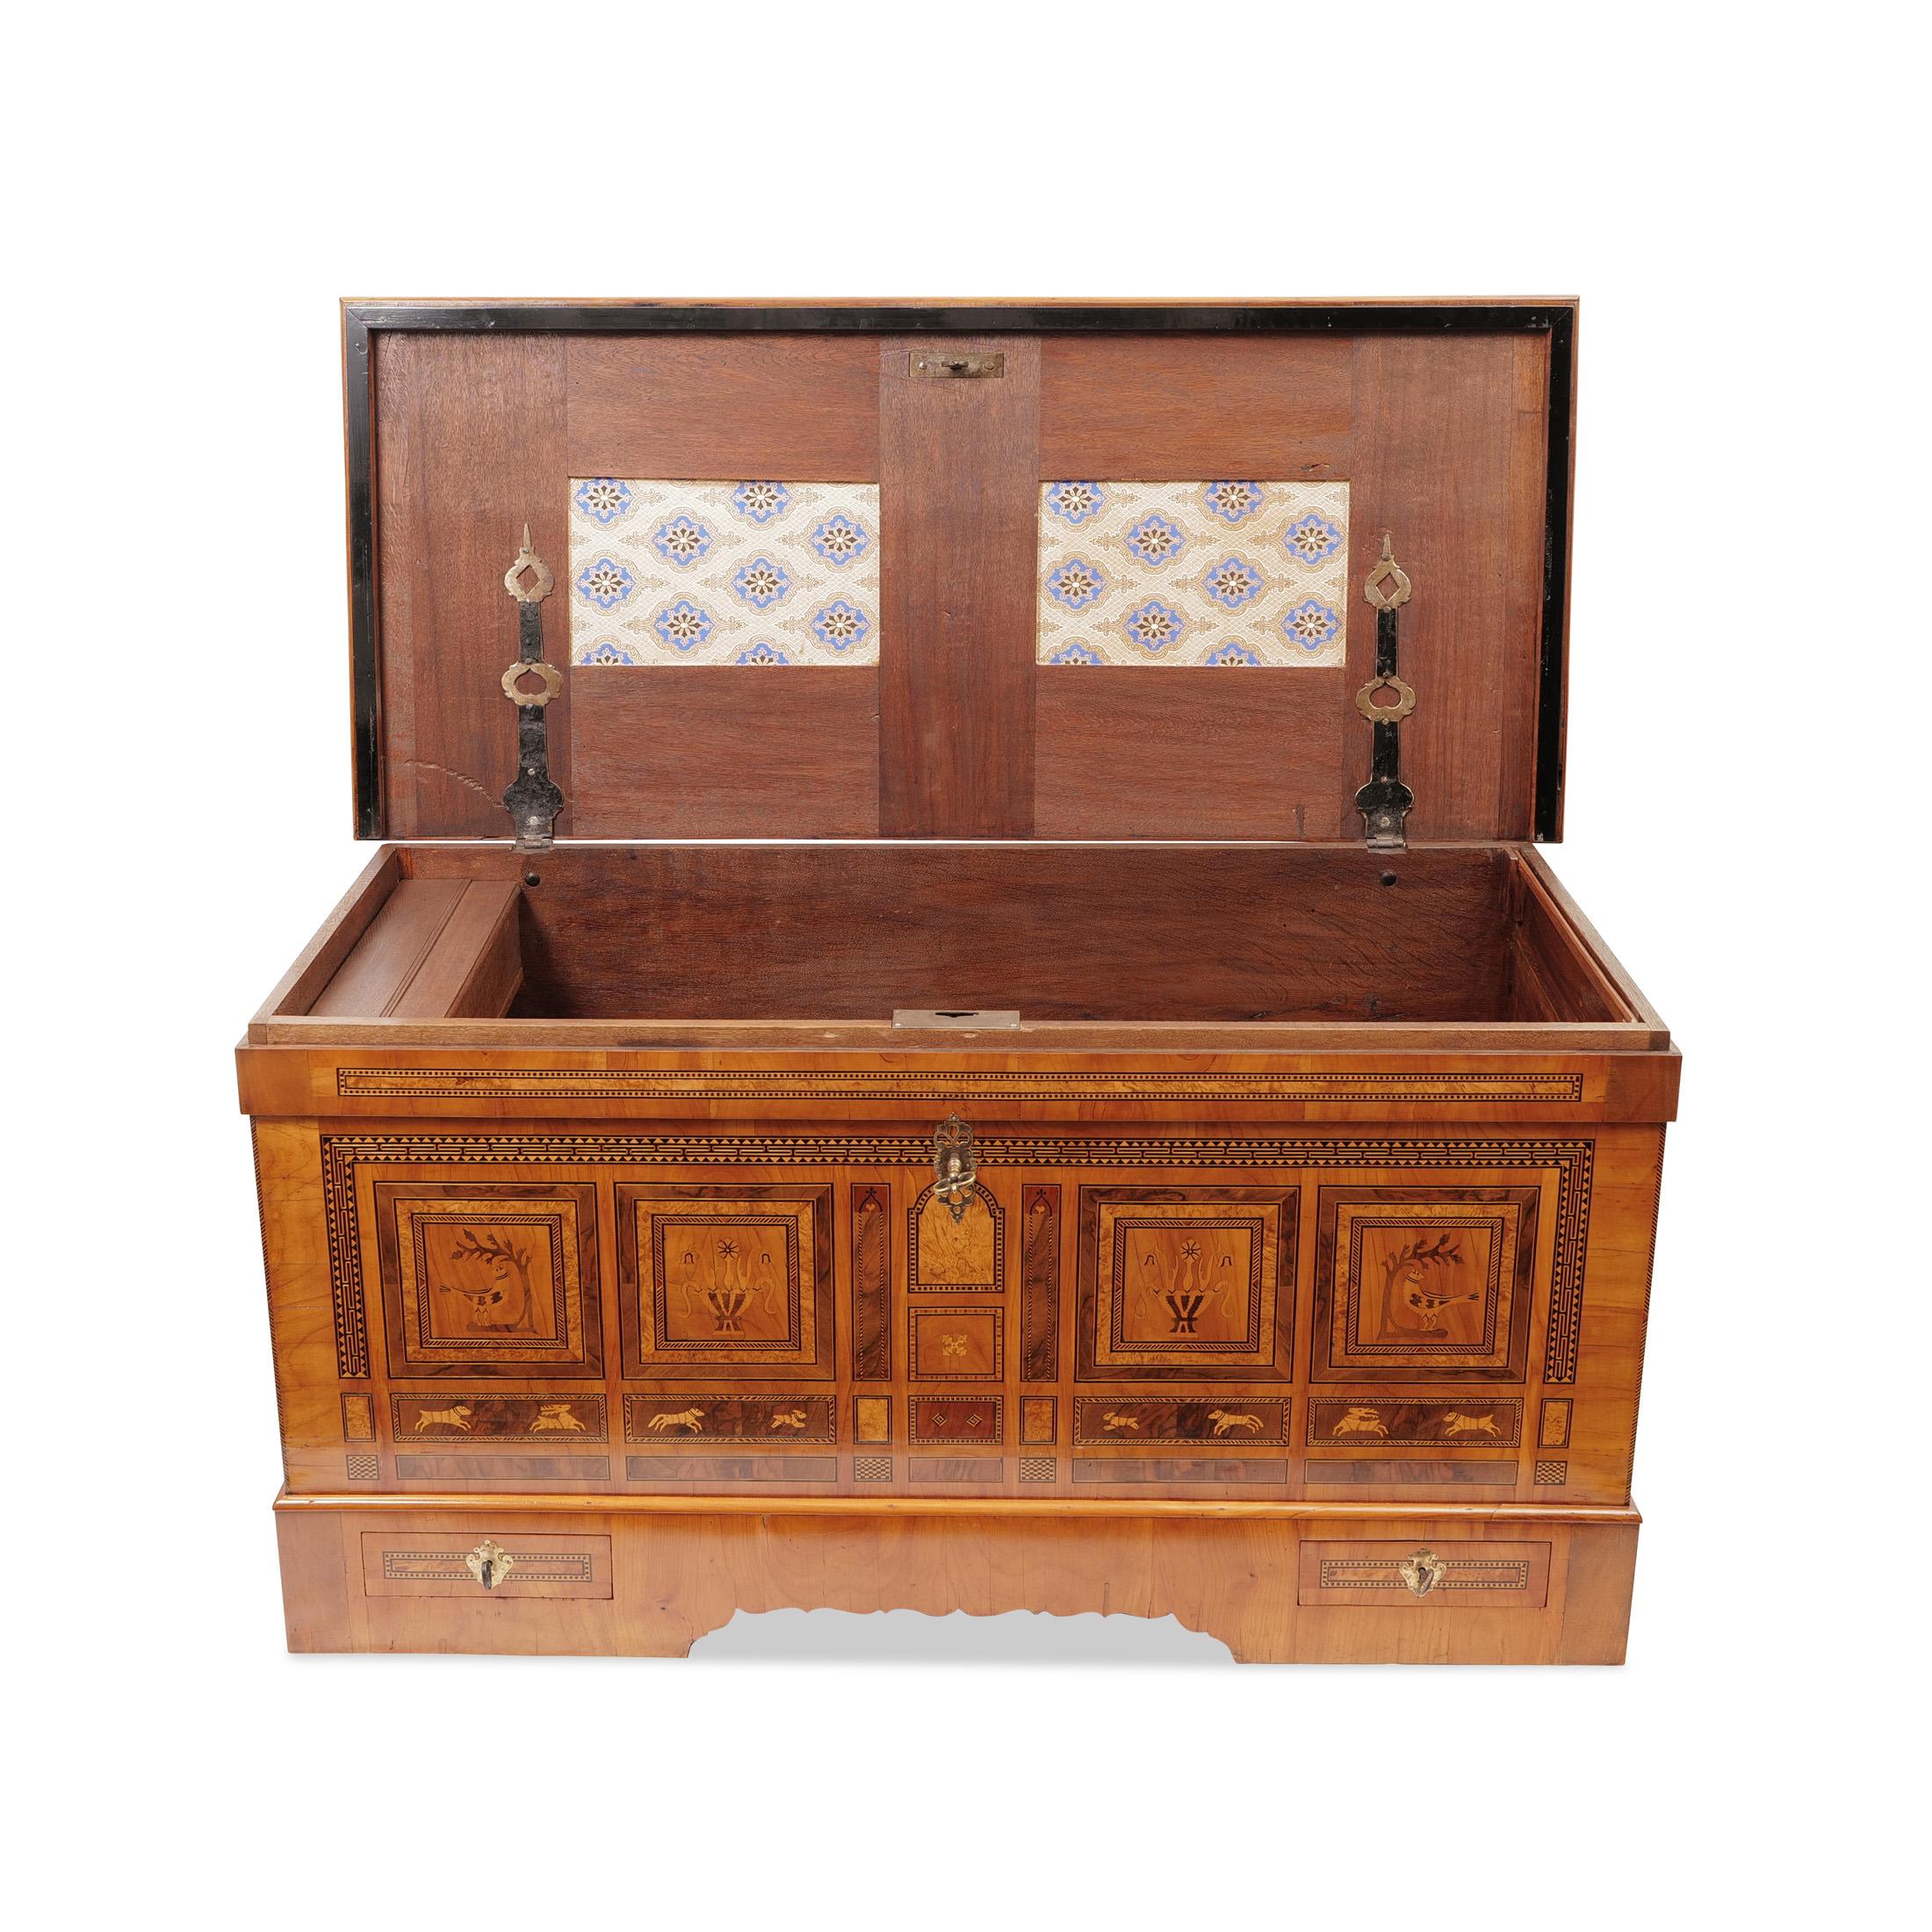 German Marburg finch chest Biedermeier around 1800-10 Cherrywood bridal chest For Sale